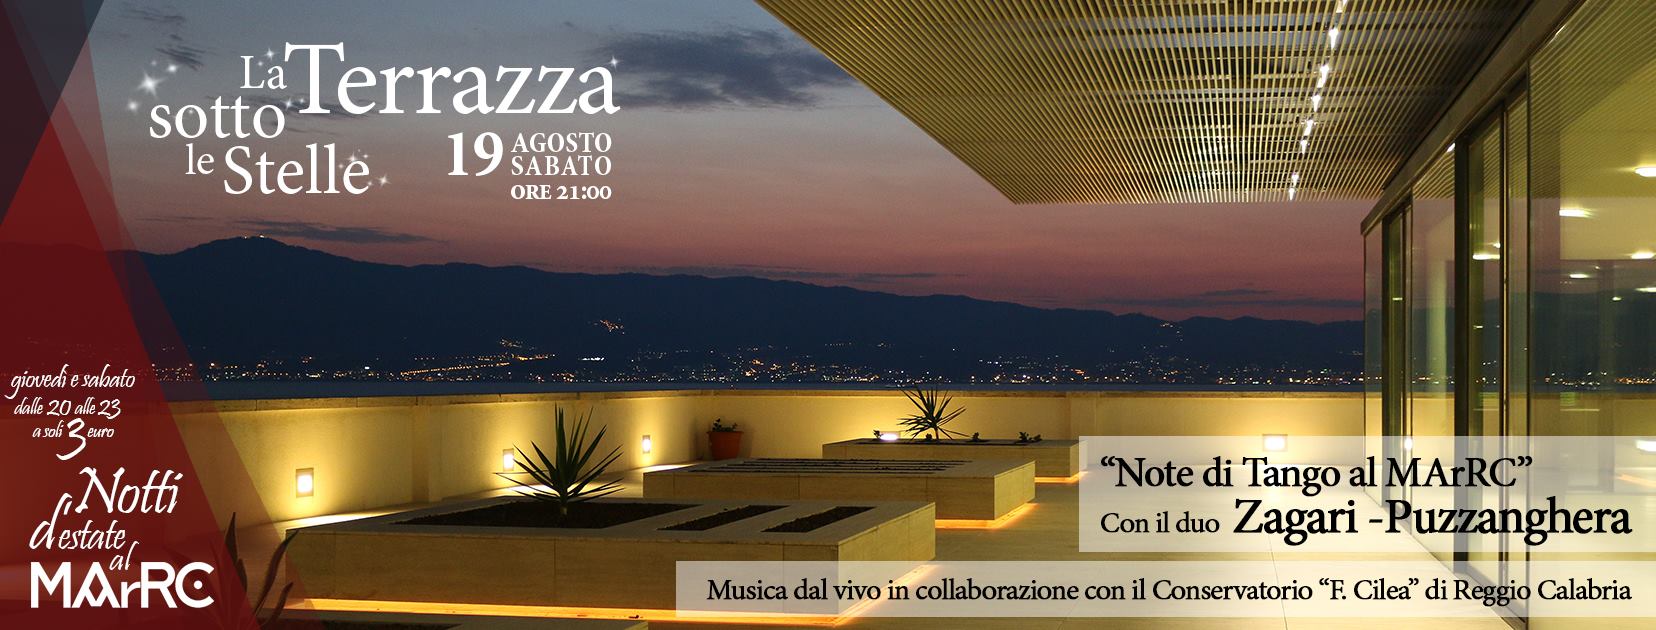 Note di tango al MArRC con il duo Zagari - Puzzanghera, in sinergia con il Conservatorio Francesco Cilea di Reggio Calabria